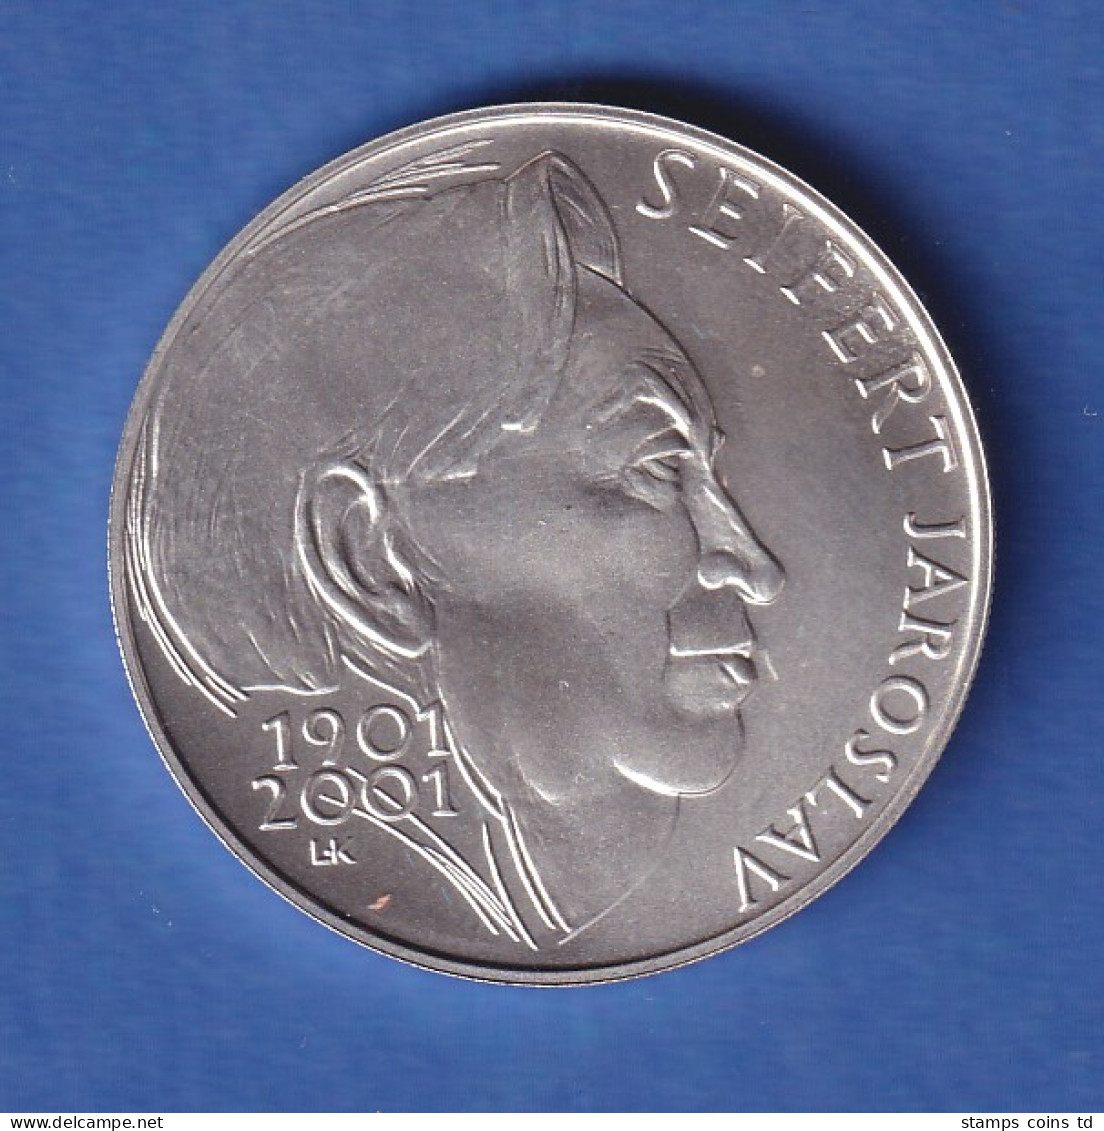 Tschechien 2001 Silbermünze 200 Kronen 100. Geburtstag Von Jaroslav Seifert Stg - Repubblica Ceca